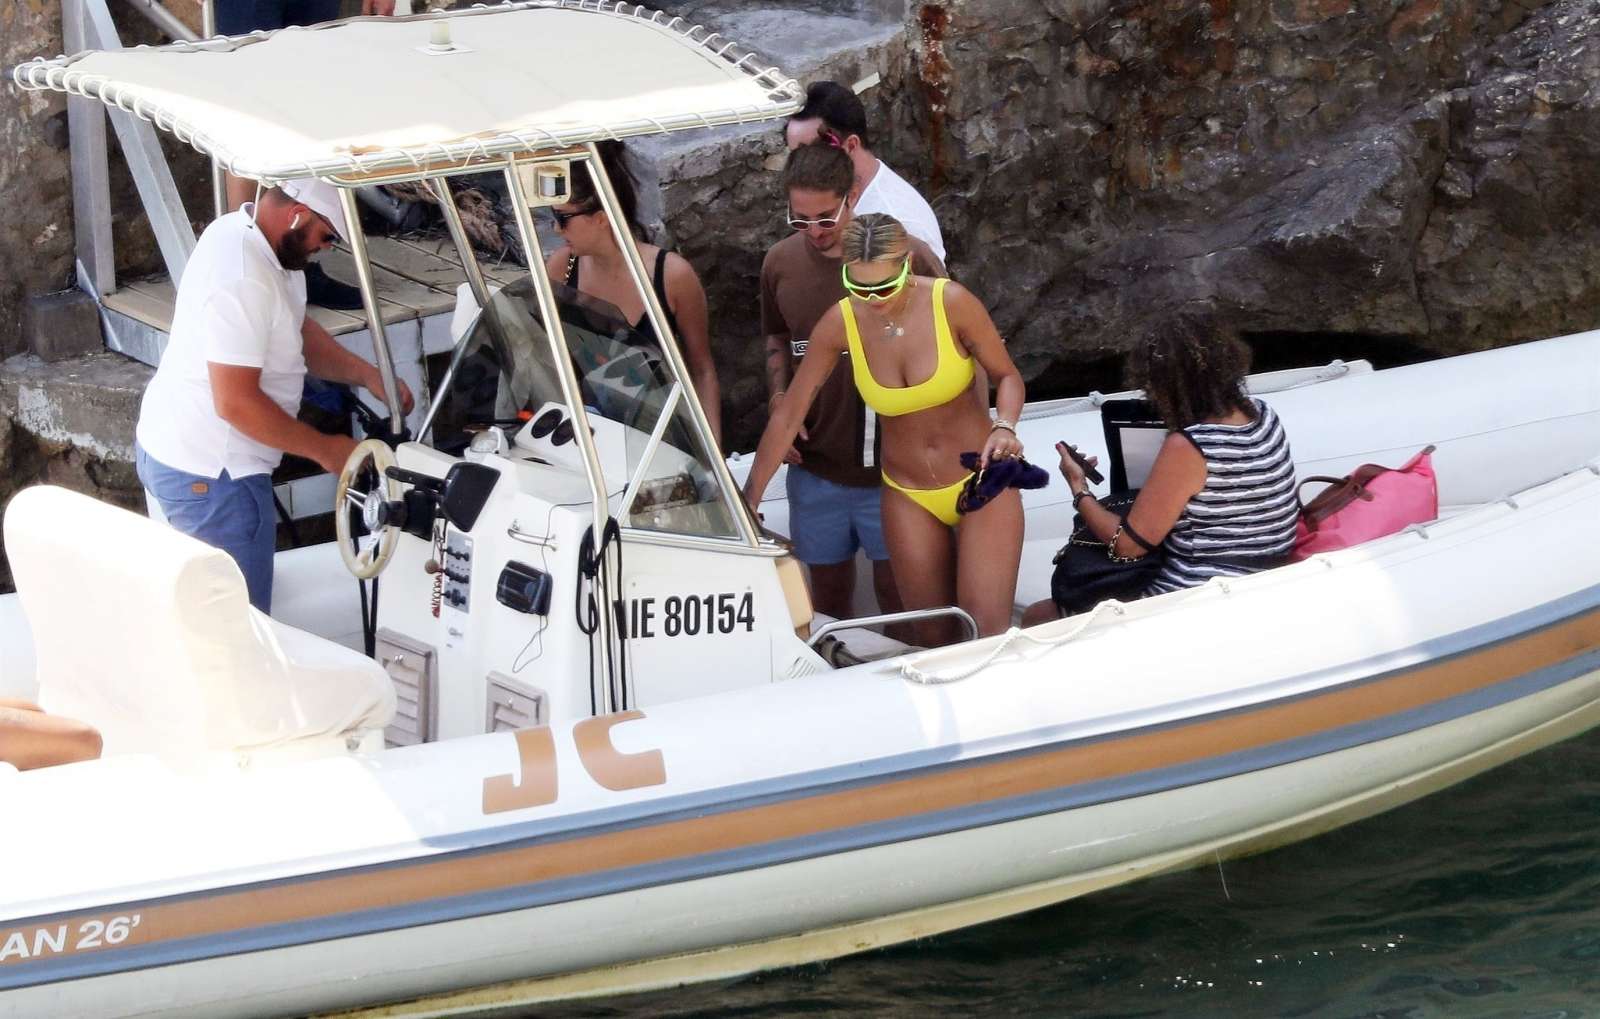 Rita Ora in a yellow bikini in French Riviera